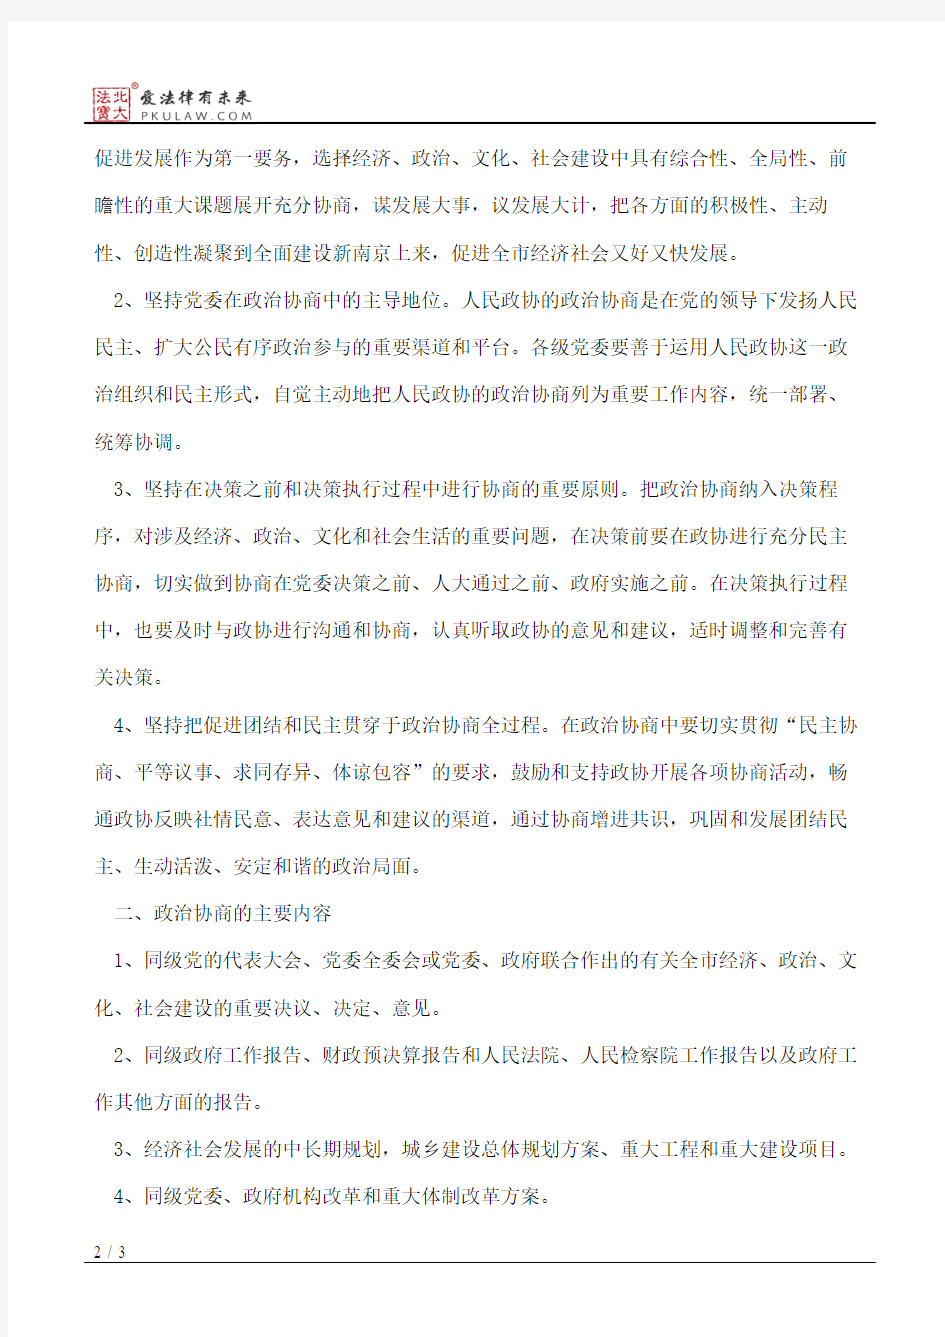 中共南京市委关于加强和改进人民政协政治协商工作的意见